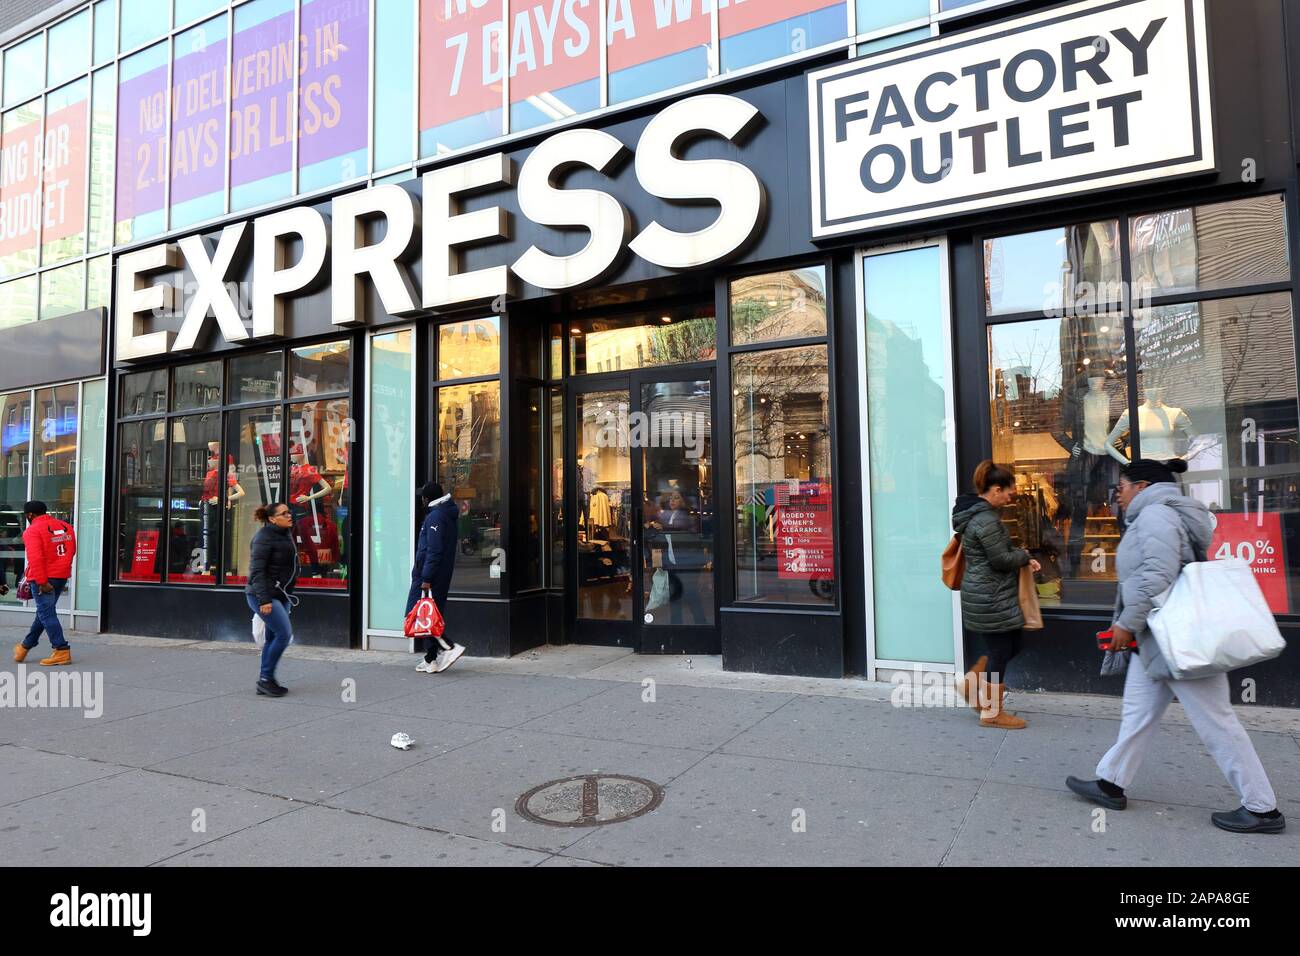 Express Factory Outlet, Fulton St, Brooklyn, Nueva York. Foto del escaparate de Nueva York de una tienda de ropa contemporánea en el centro de Brooklyn, Nueva York, Nueva York Fotografía de